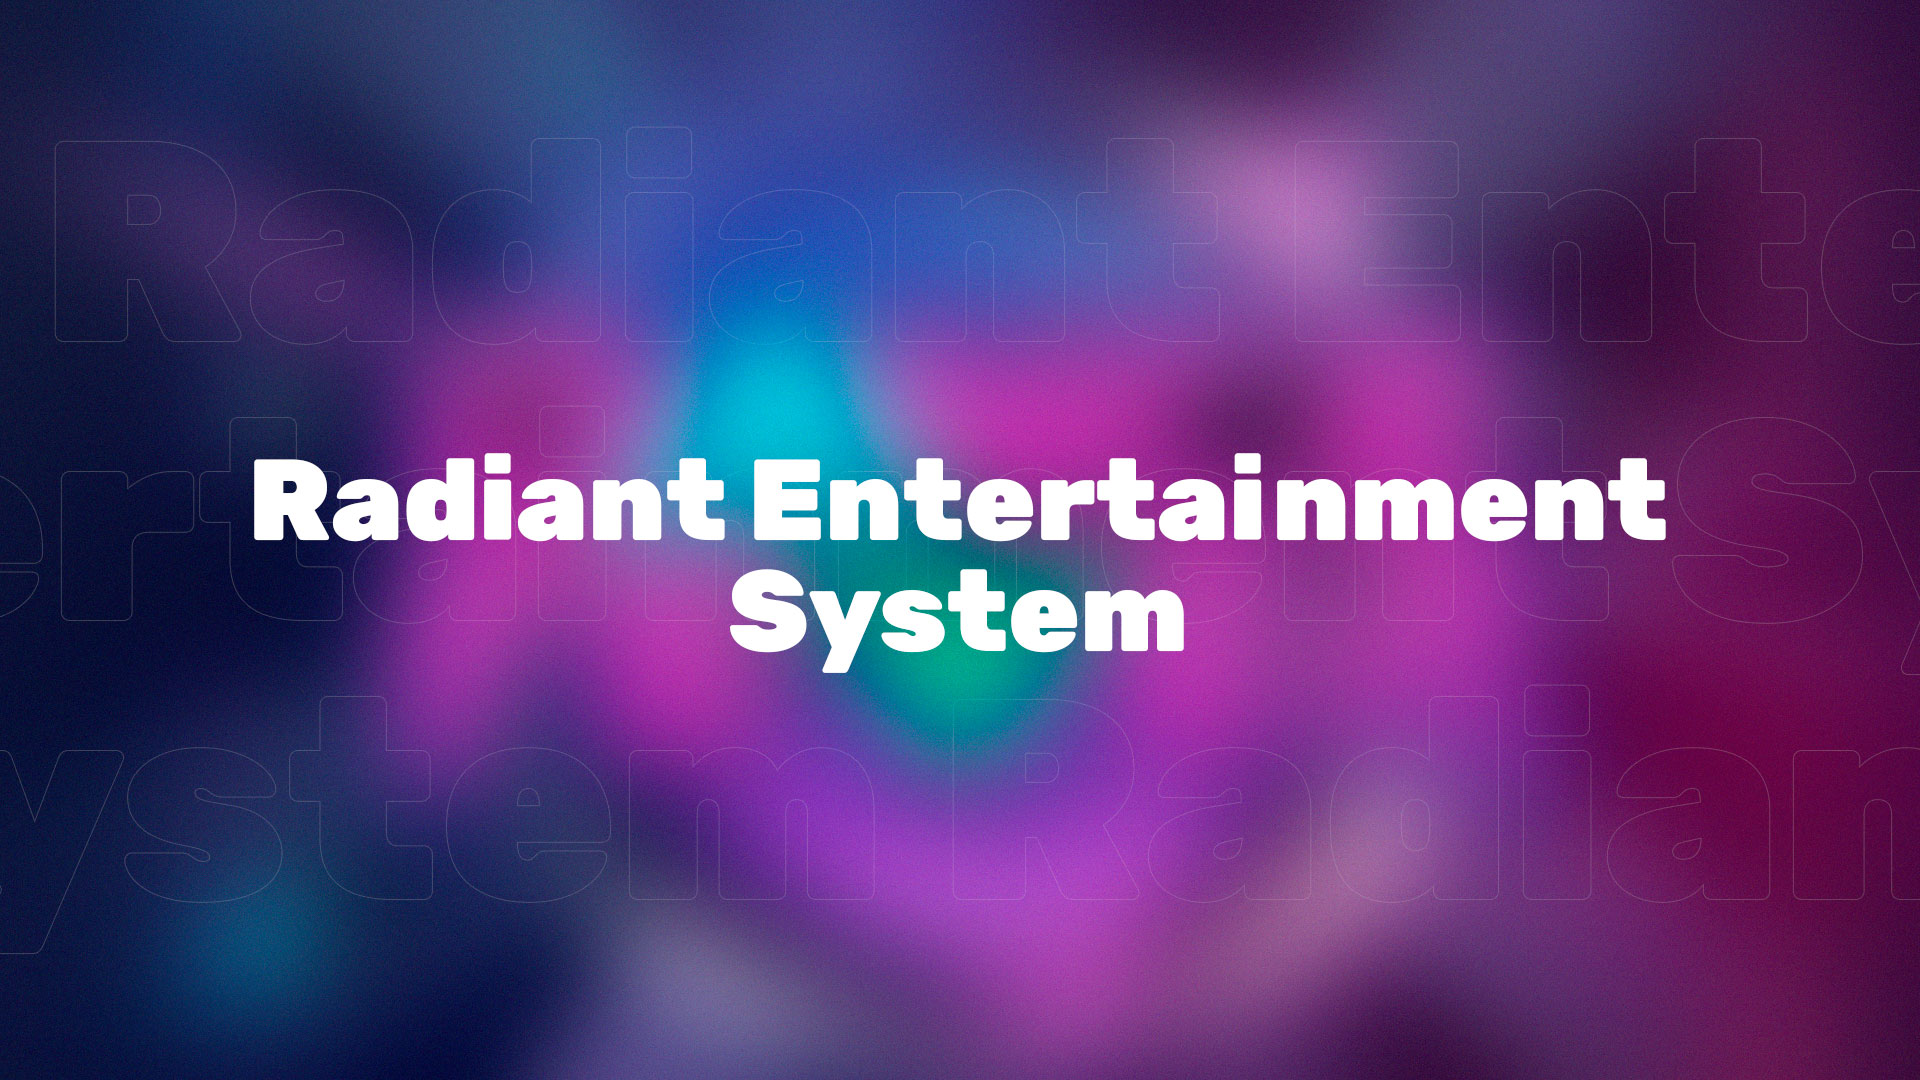 В Valorant появилась совершенно новая коллекция скинов – Radiant Entertainment System, ранее известная как Аркада.